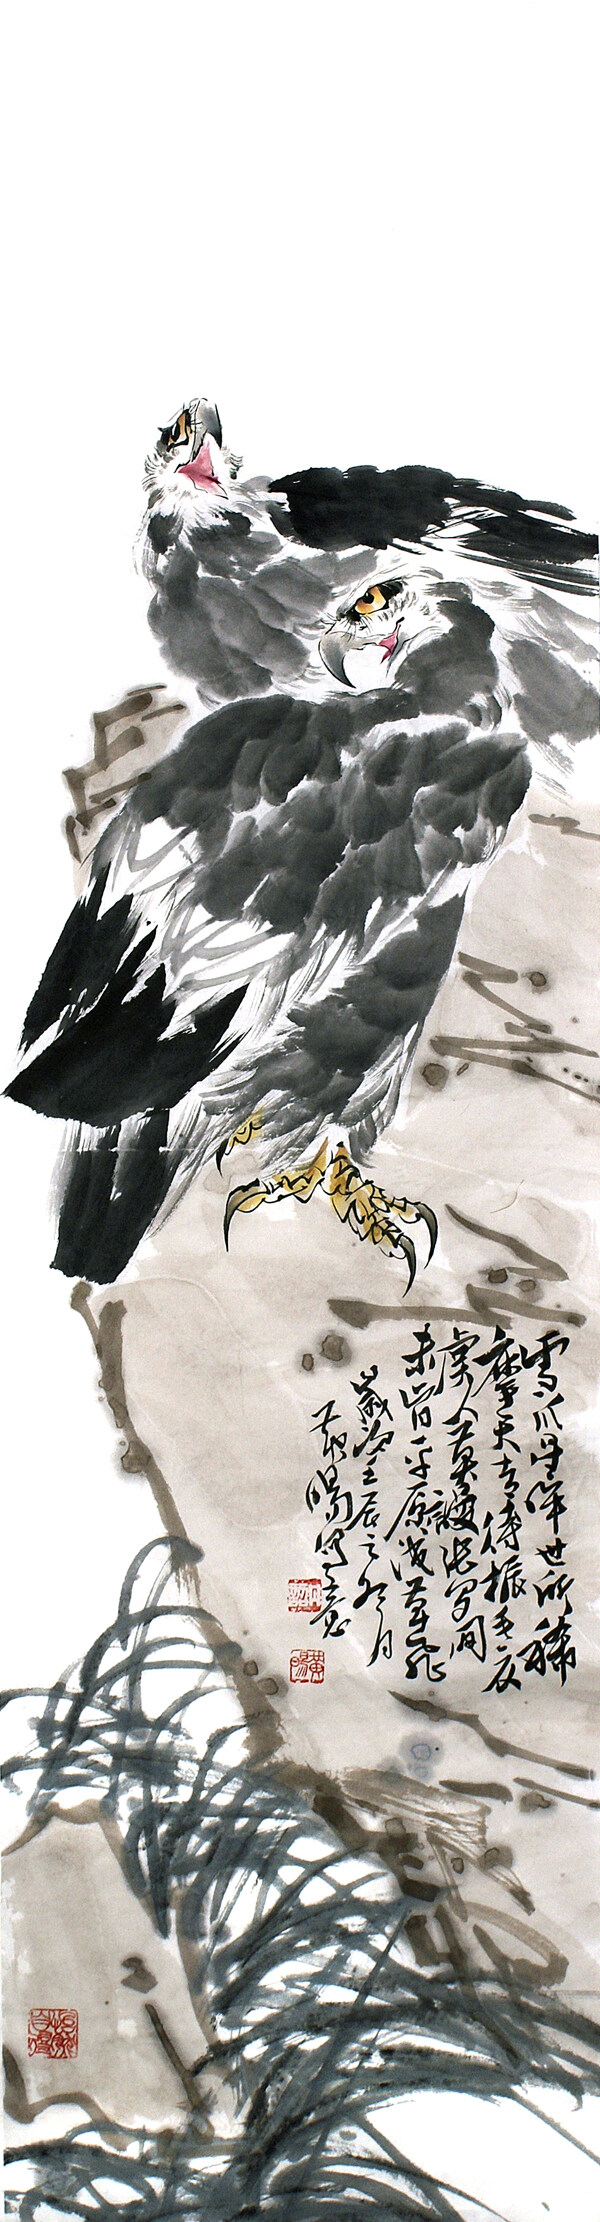 黄旸写意花鸟图片